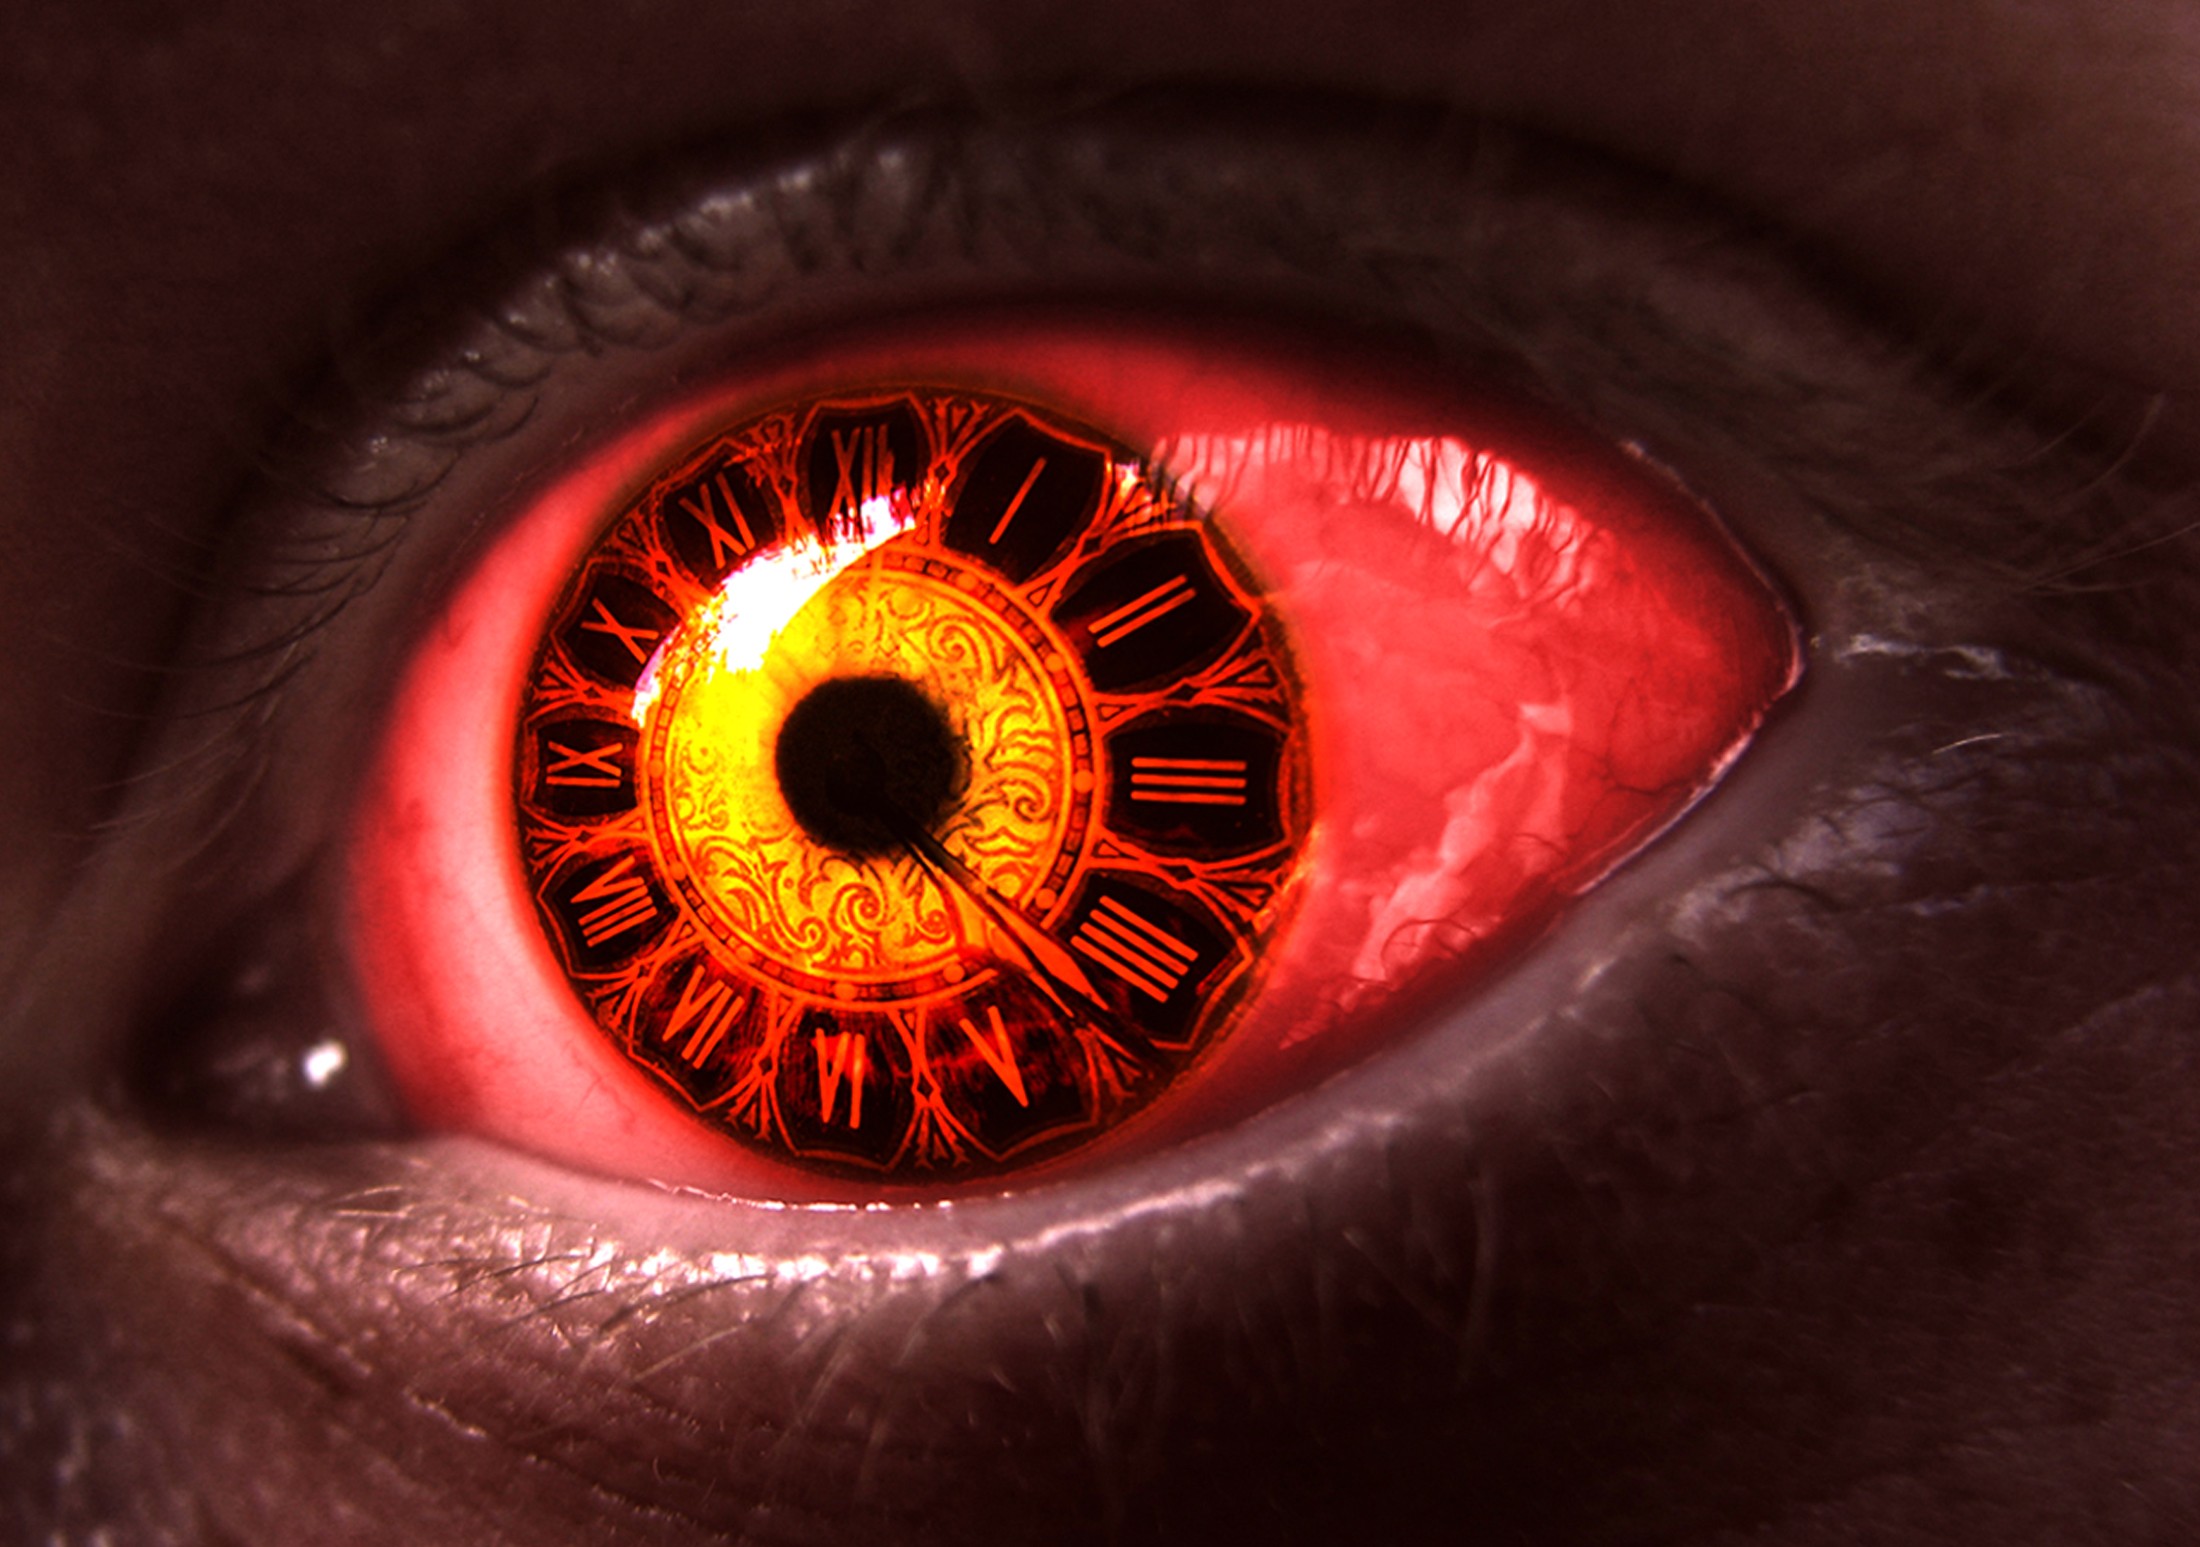 General 2200x1547 eyes clocks digital art spooky closeup